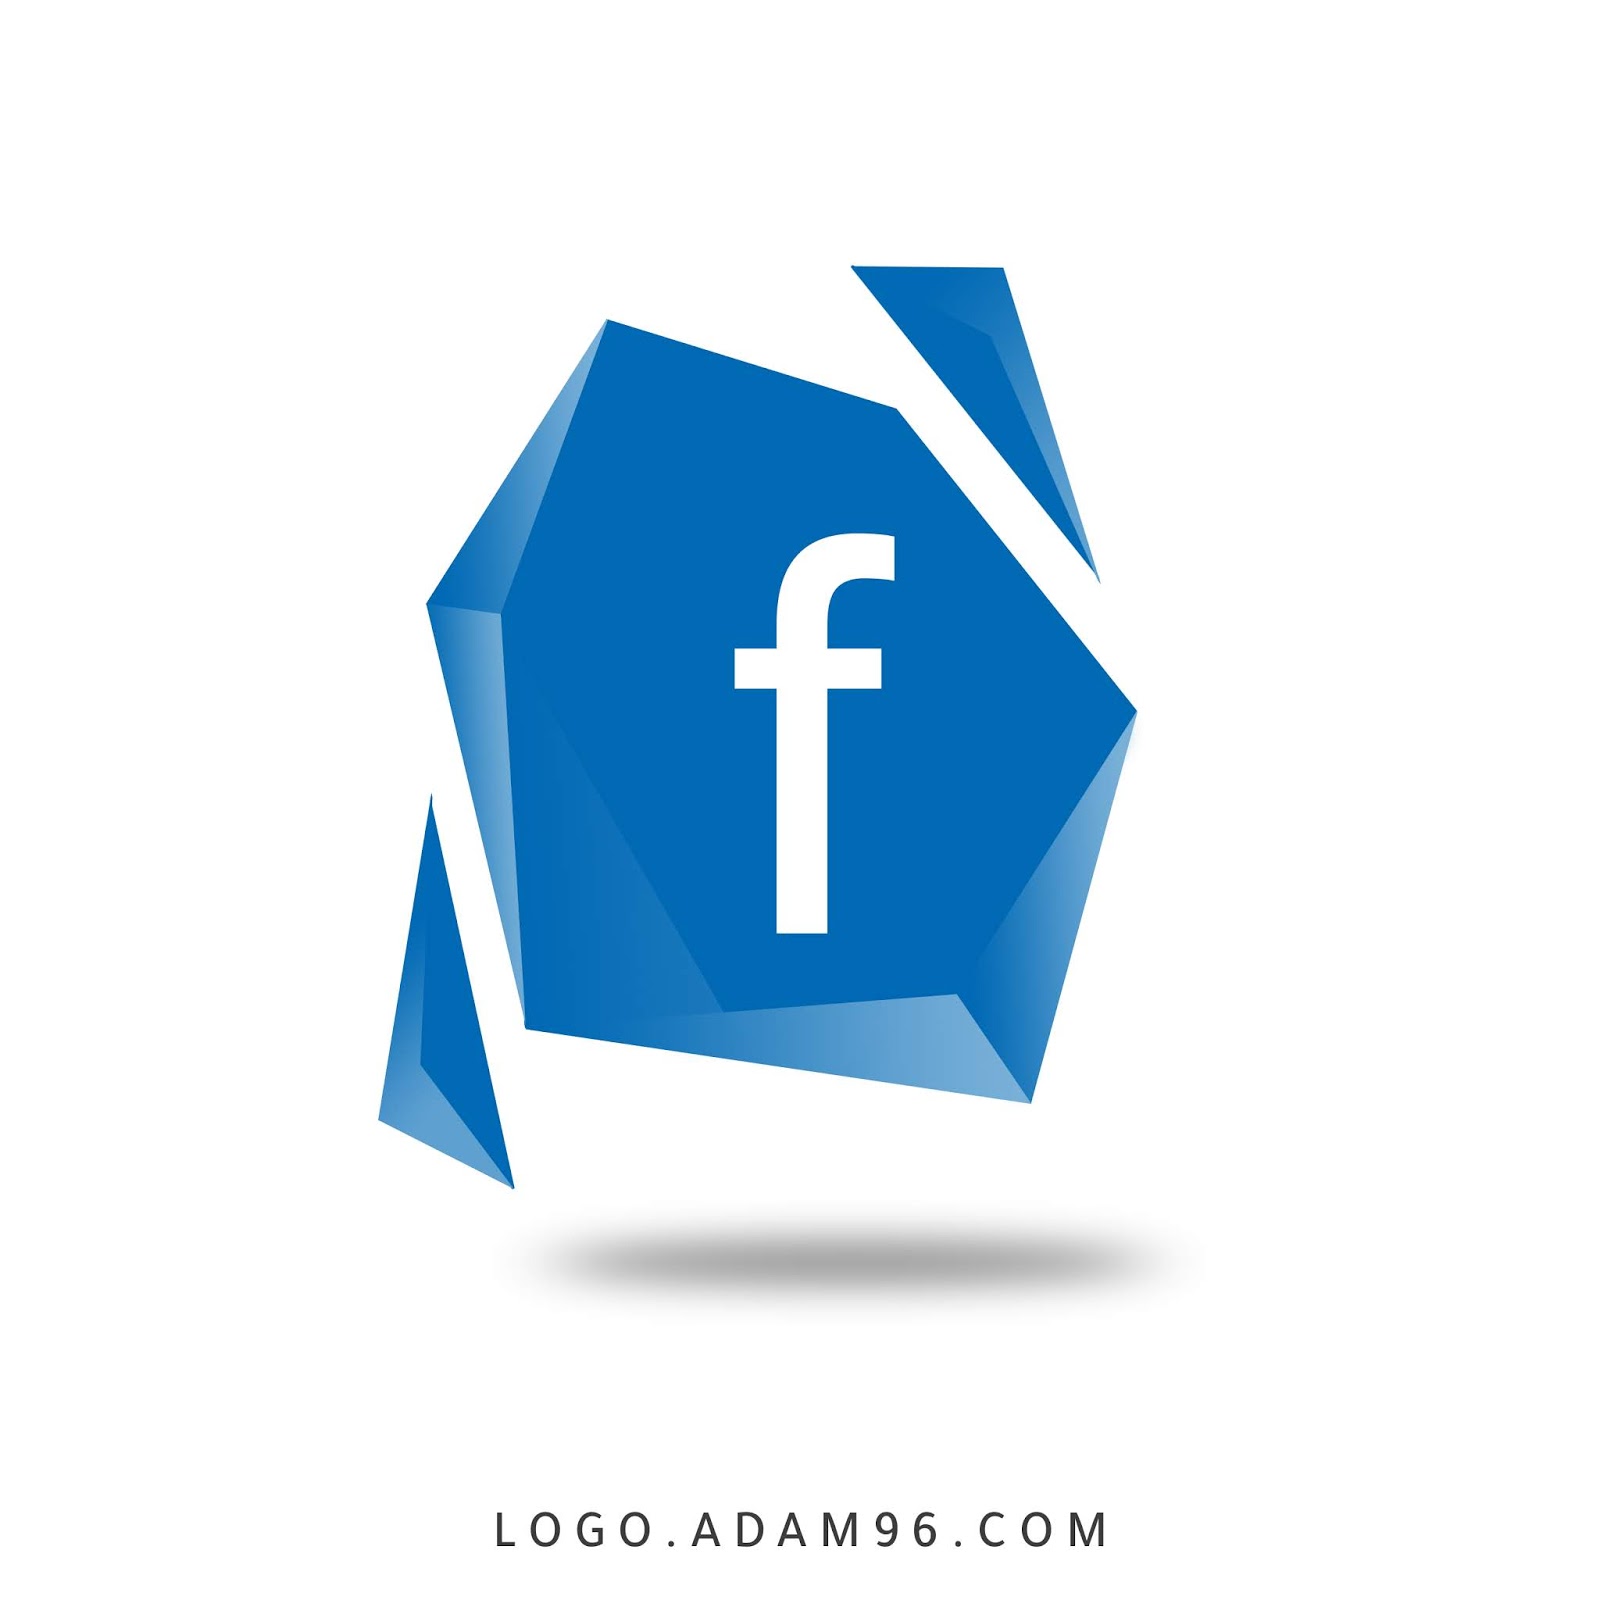 Logo Instagram Facebook Images Stock Photos Vectors Shutterstock